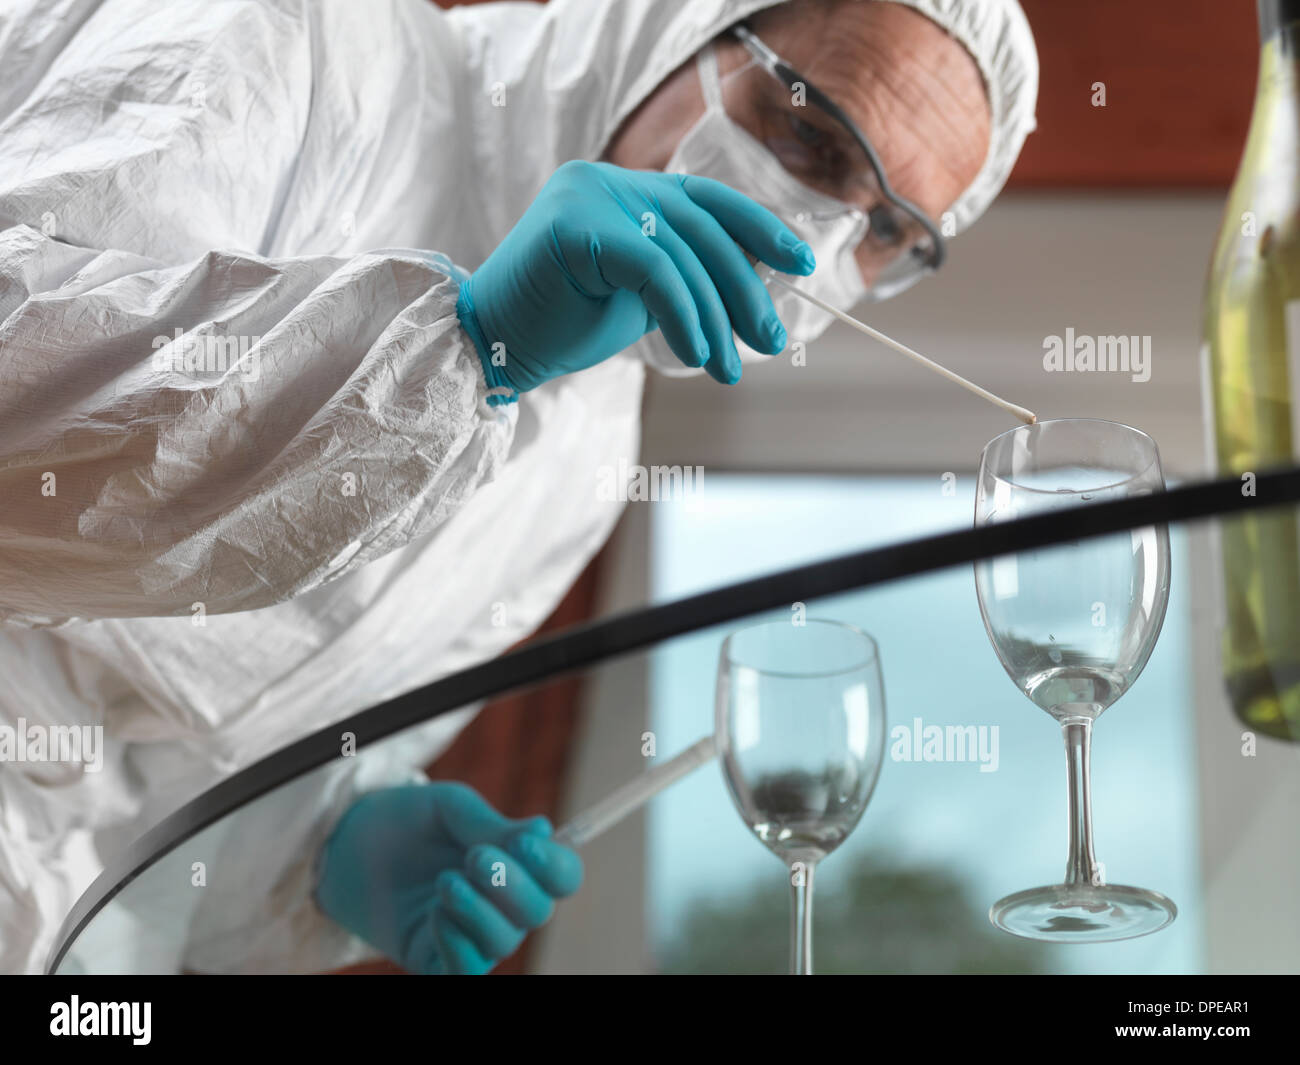 Científico Forense, utilizando un hisopo para tomar pruebas de ADN a partir de un cristal en una escena del crimen Foto de stock